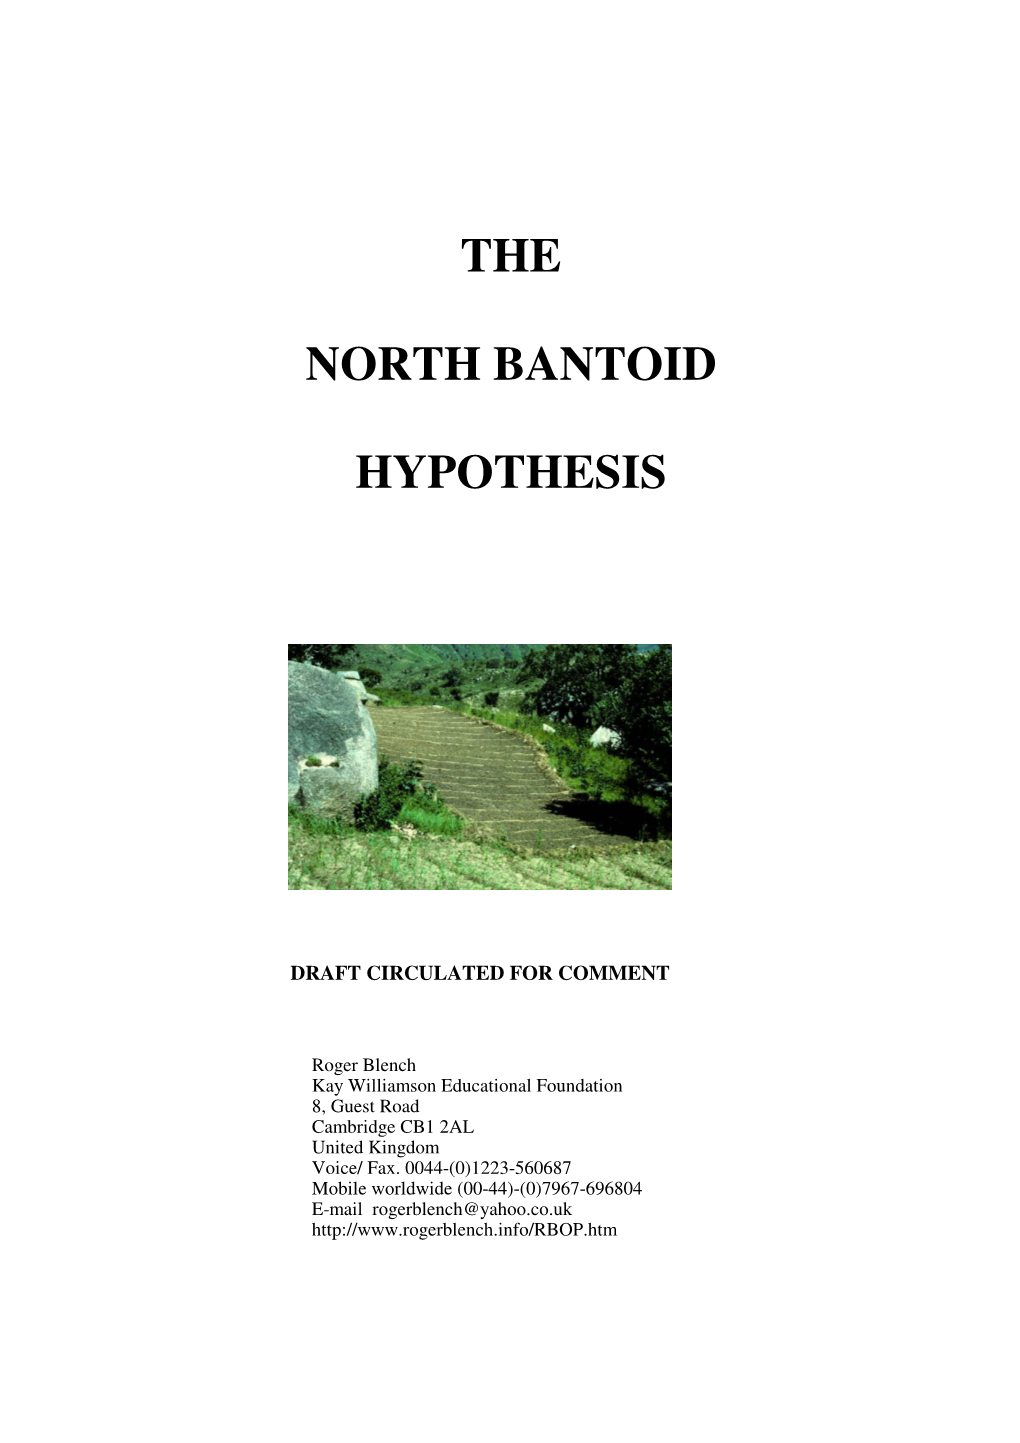 The North Bantoid Hypothesis Circulation Draft